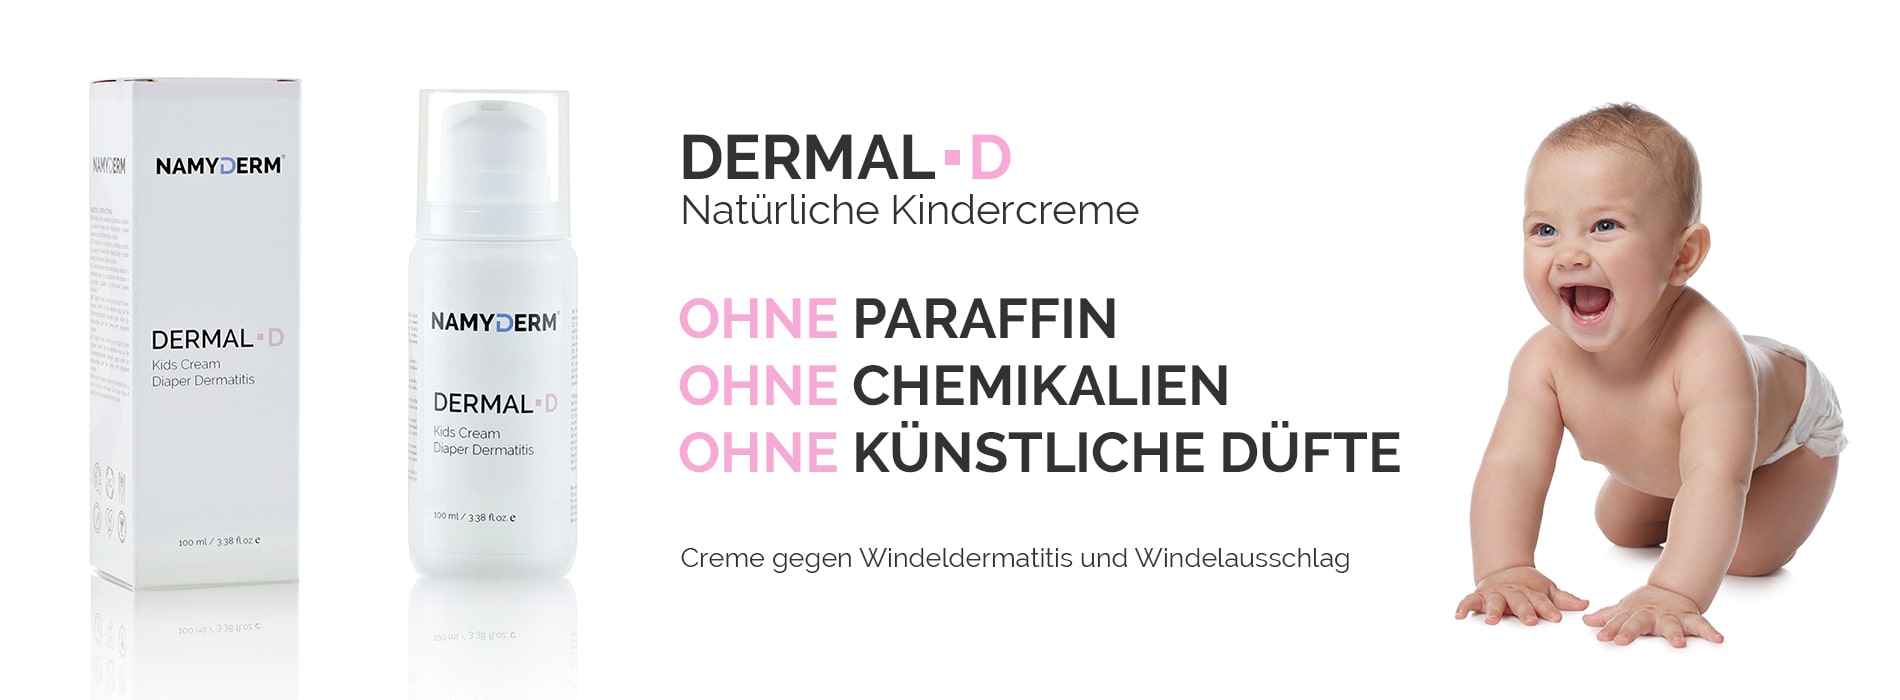 DERMAL D - Creme gegen Windeldermatitis und Windelausschlag